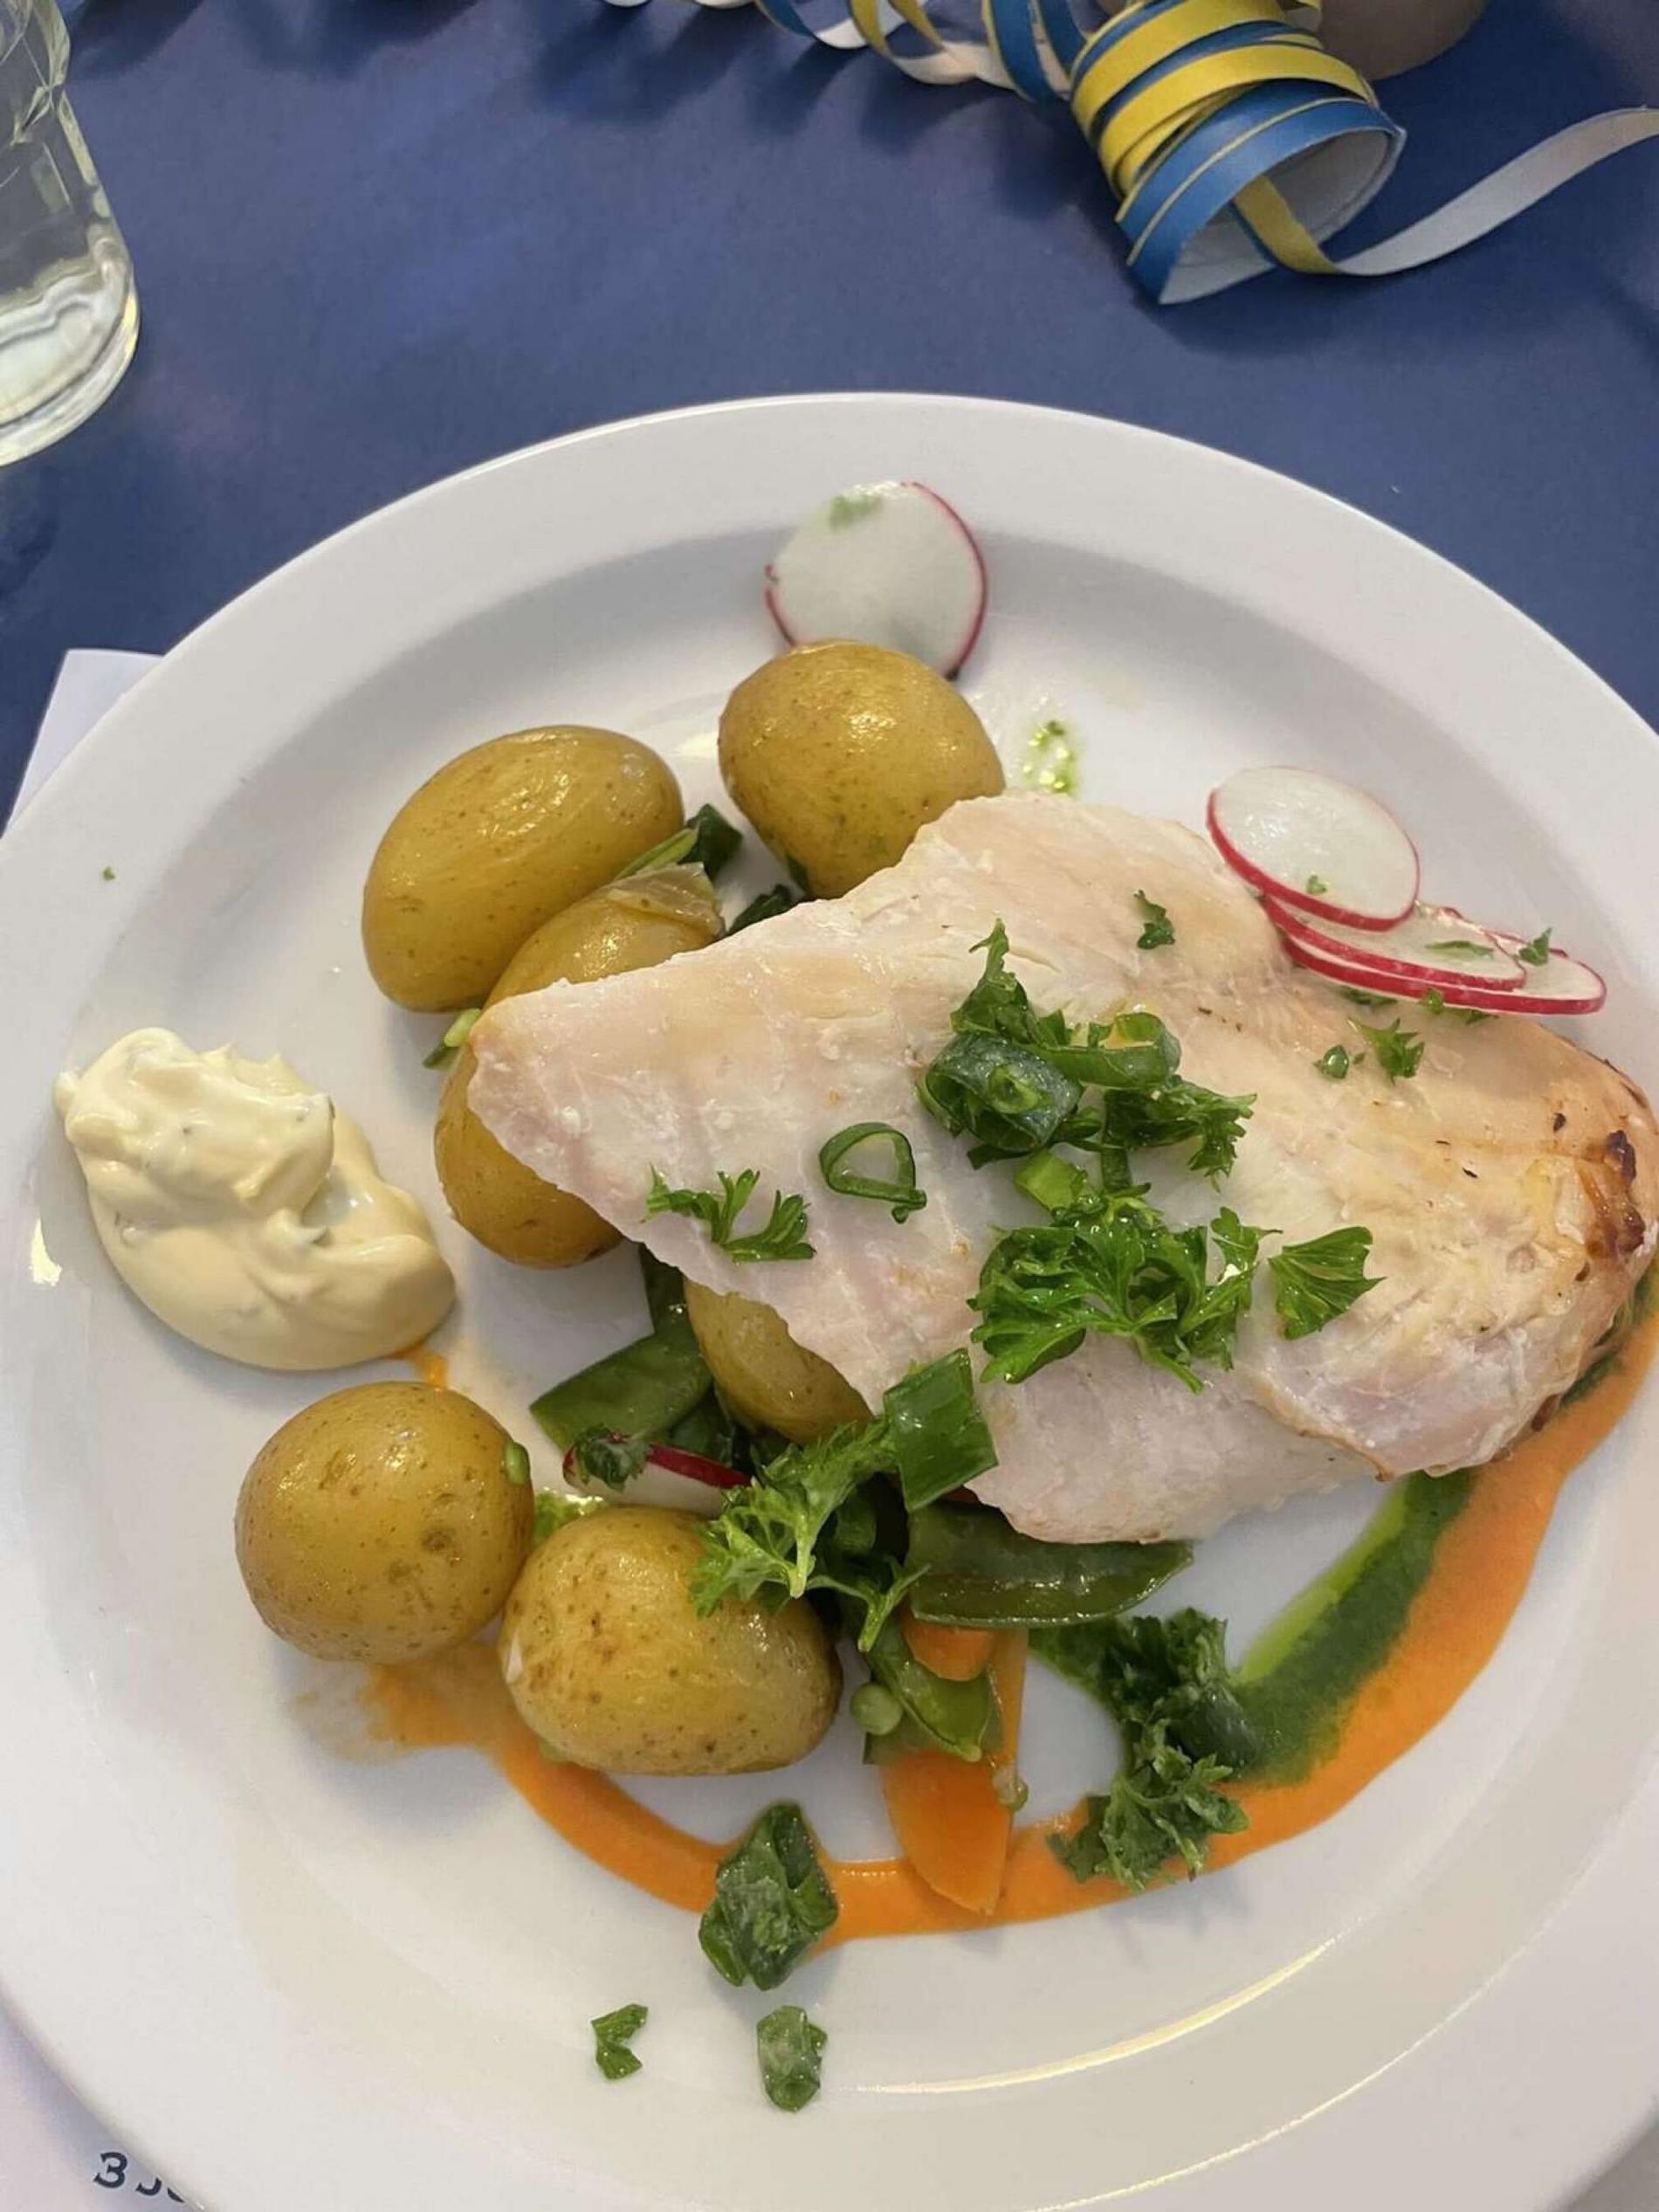 Potatis och kyckling serverades till studentlunchen på Högbergsskolans gymnasium i Tierp.